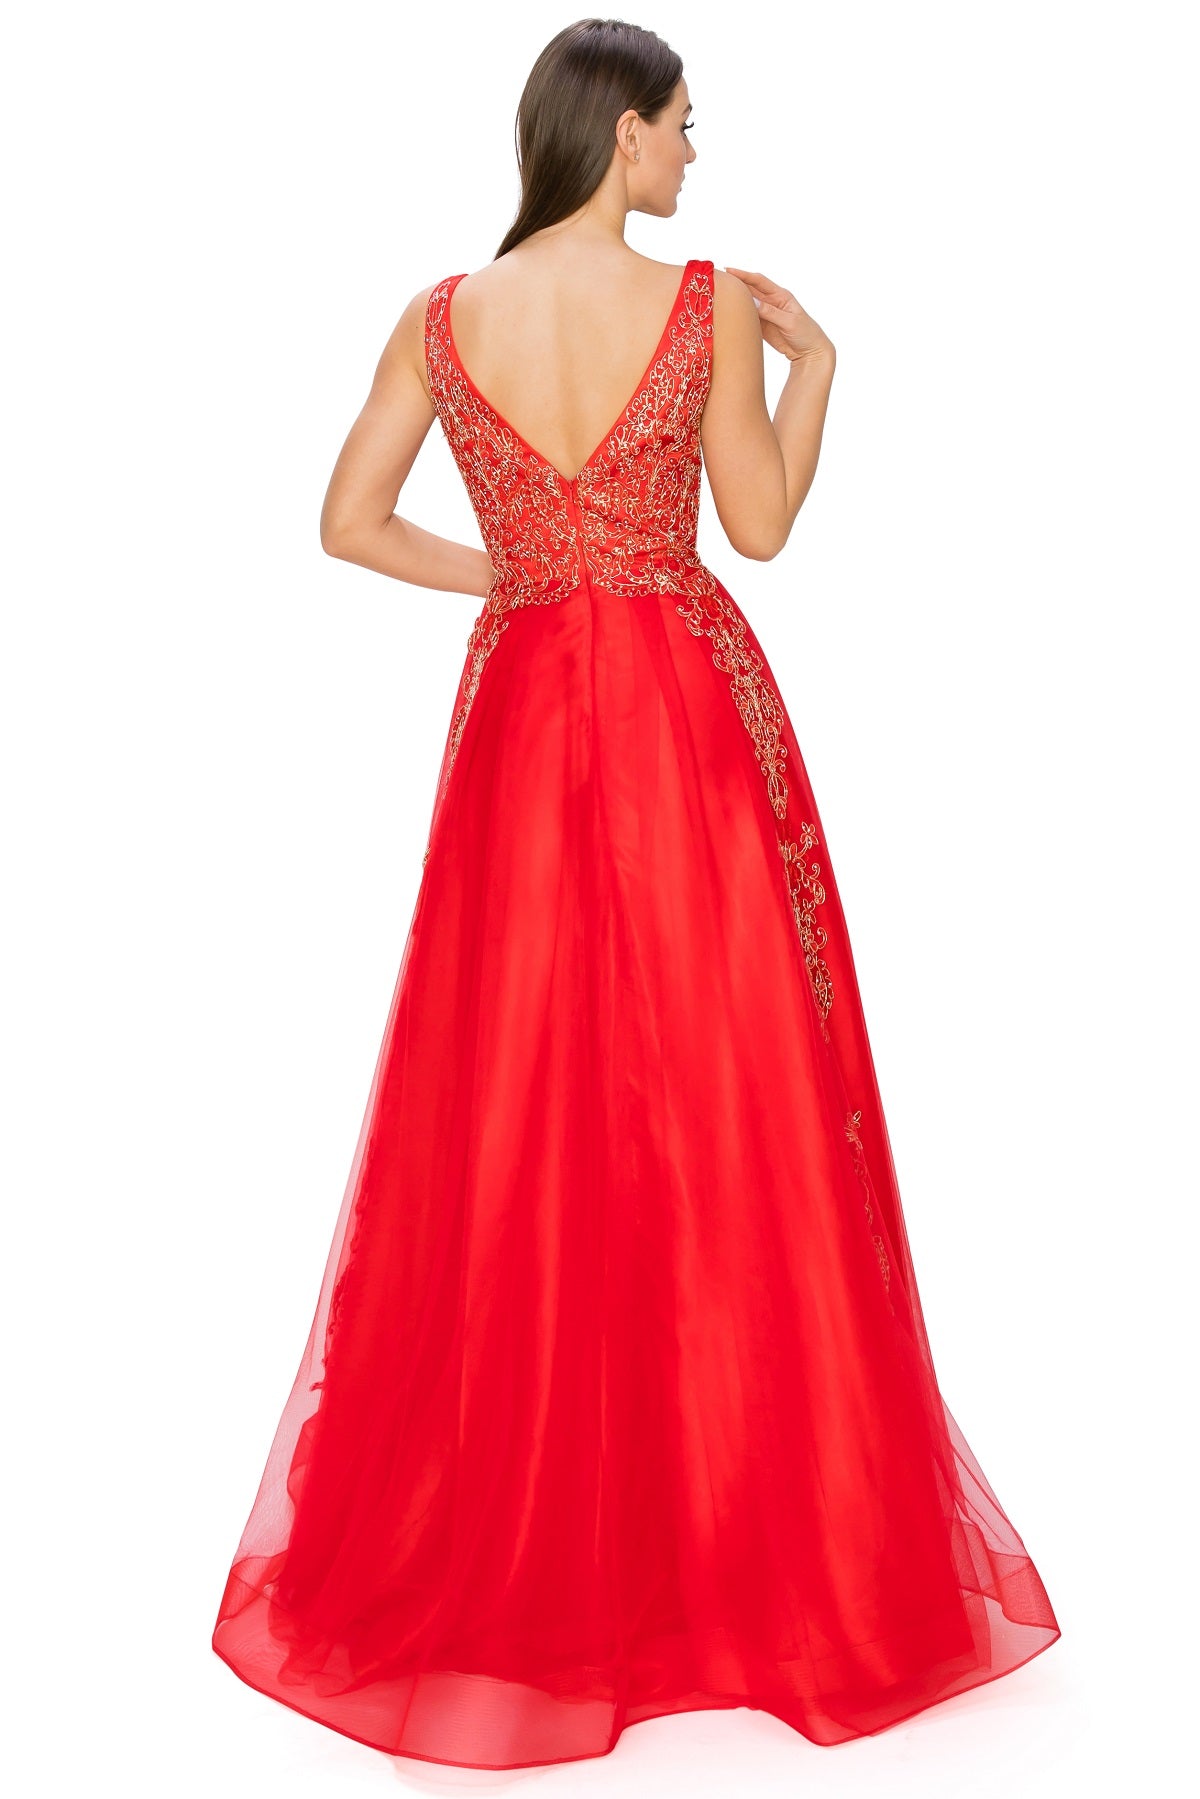 Cinderella Divine Dresses | Designer Gowns at NewYorkDress